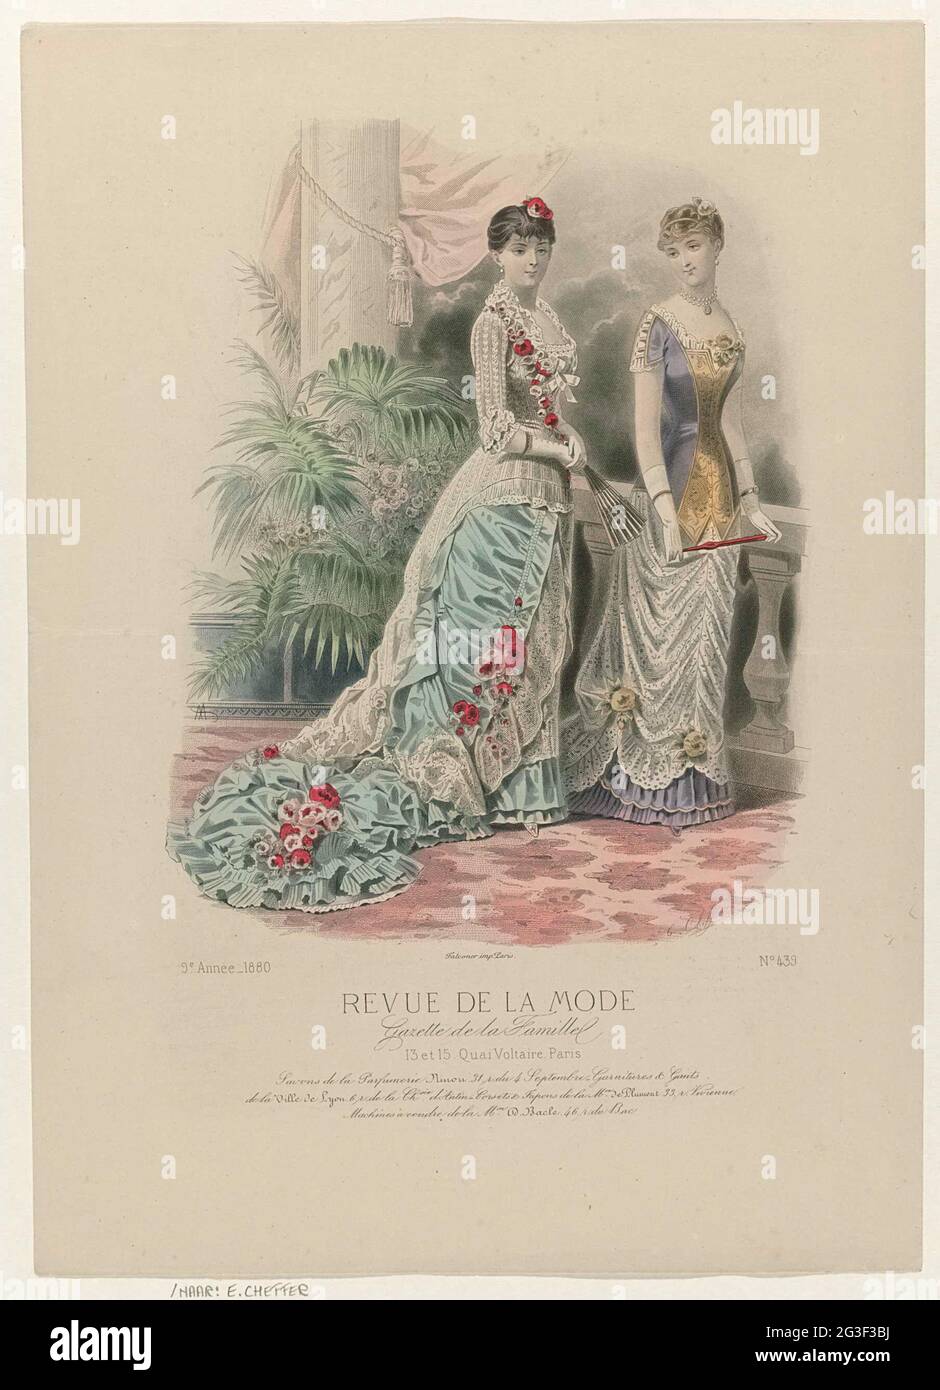 Revue de la fashion, Gazette de la Famille, Dimanche 30 Mai 1880, 9th  Année, No. 439: Savons de la Parfumerie Ninon (...). Two women at a  balustrade. Left :: a white with